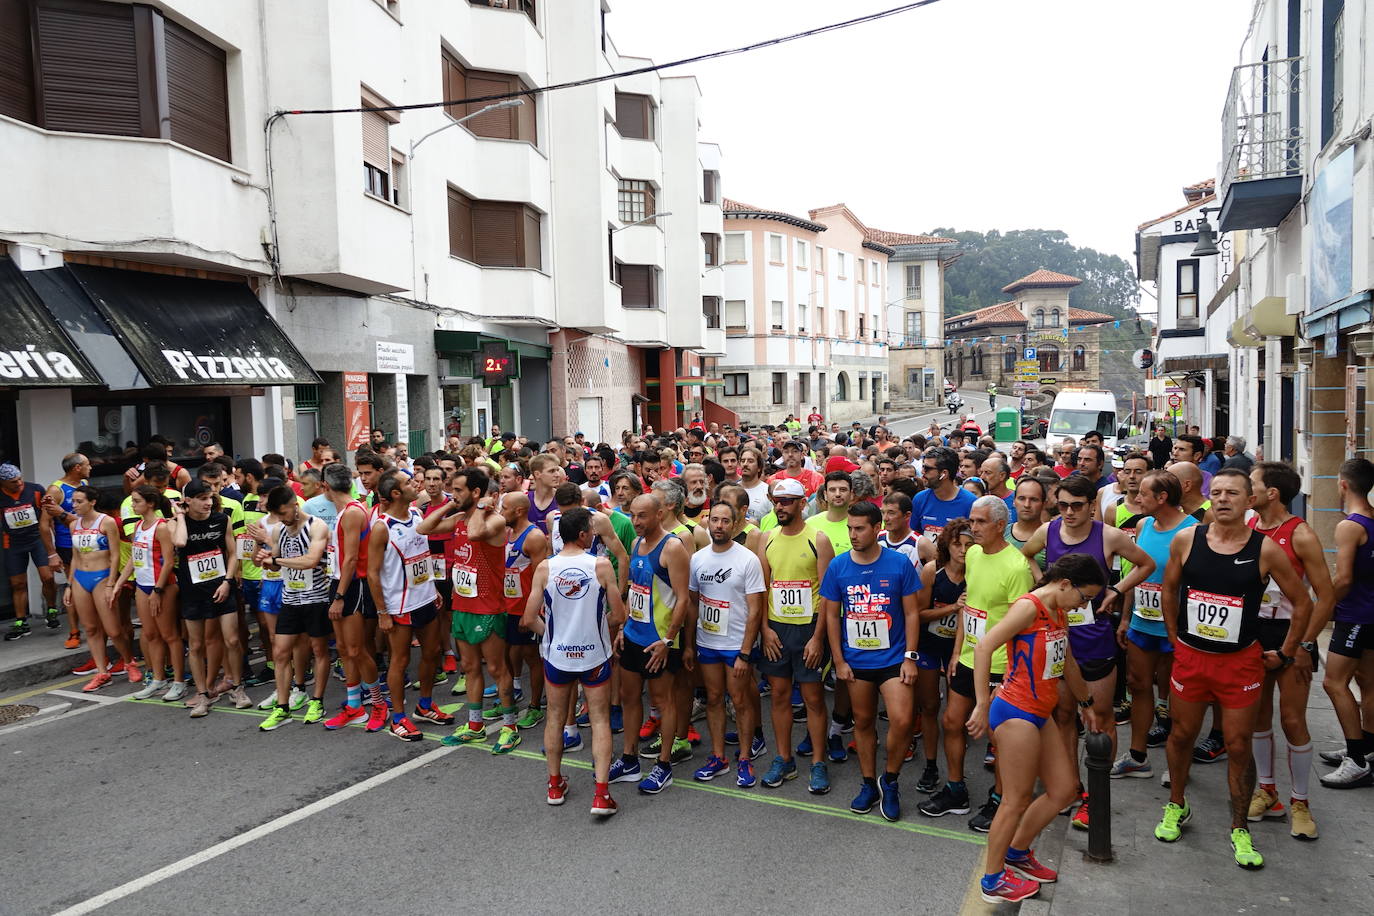 El concejo de Colunga acogió la decimoséptima edición de la Carrera del Jurásico EDP, organizada por el Club Colunga Atletismo.